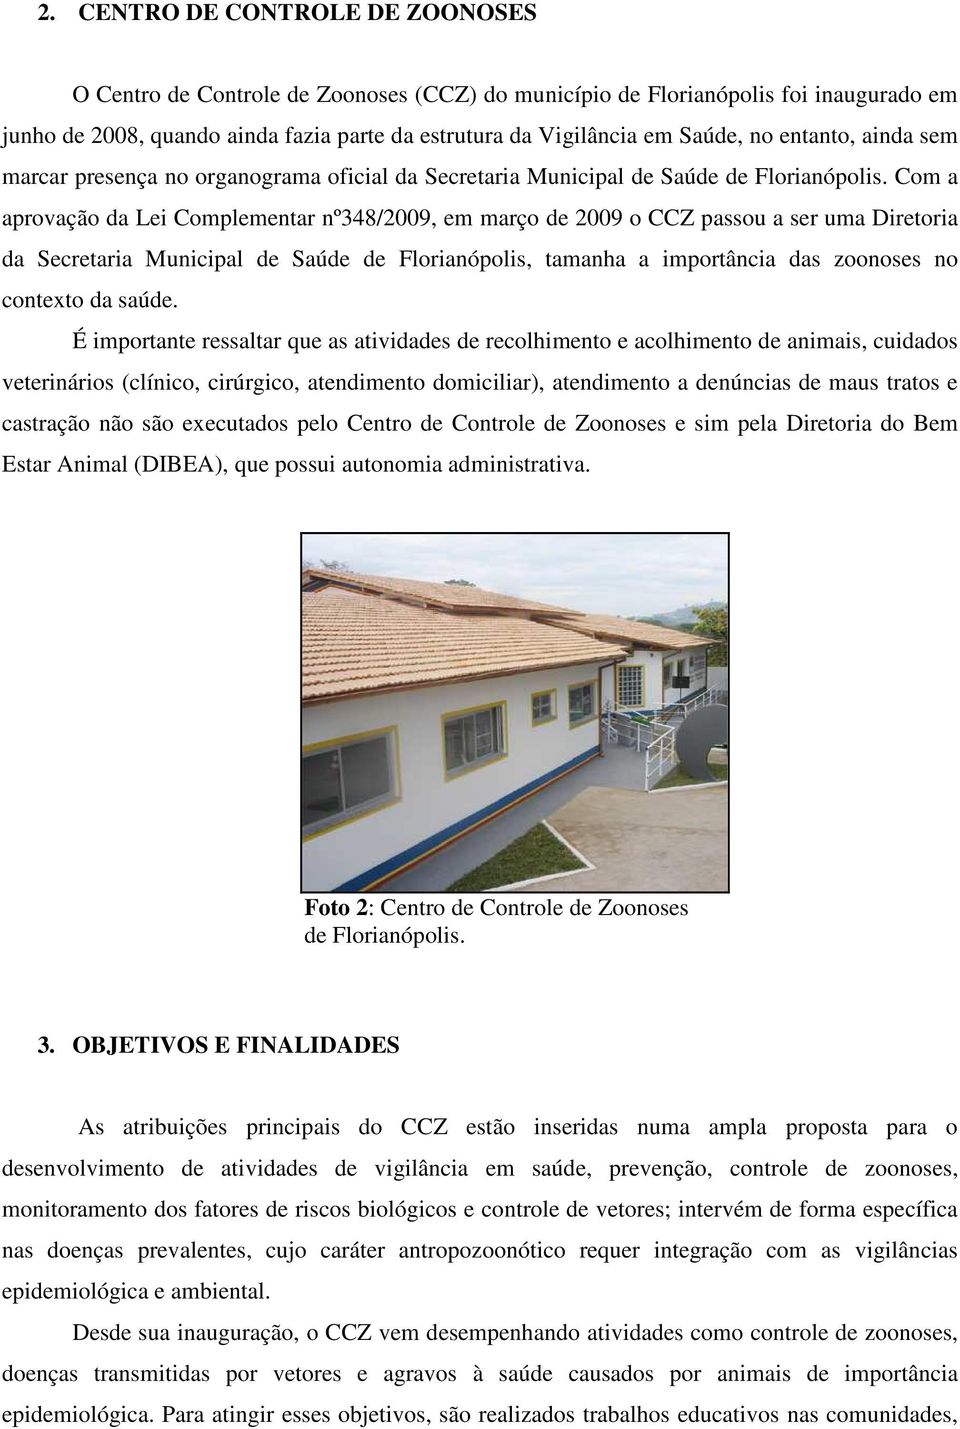 Com a aprovação da Lei Complementar nº348/2009, em março de 2009 o CCZ passou a ser uma Diretoria da Secretaria Municipal de Saúde de Florianópolis, tamanha a importância das zoonoses no contexto da